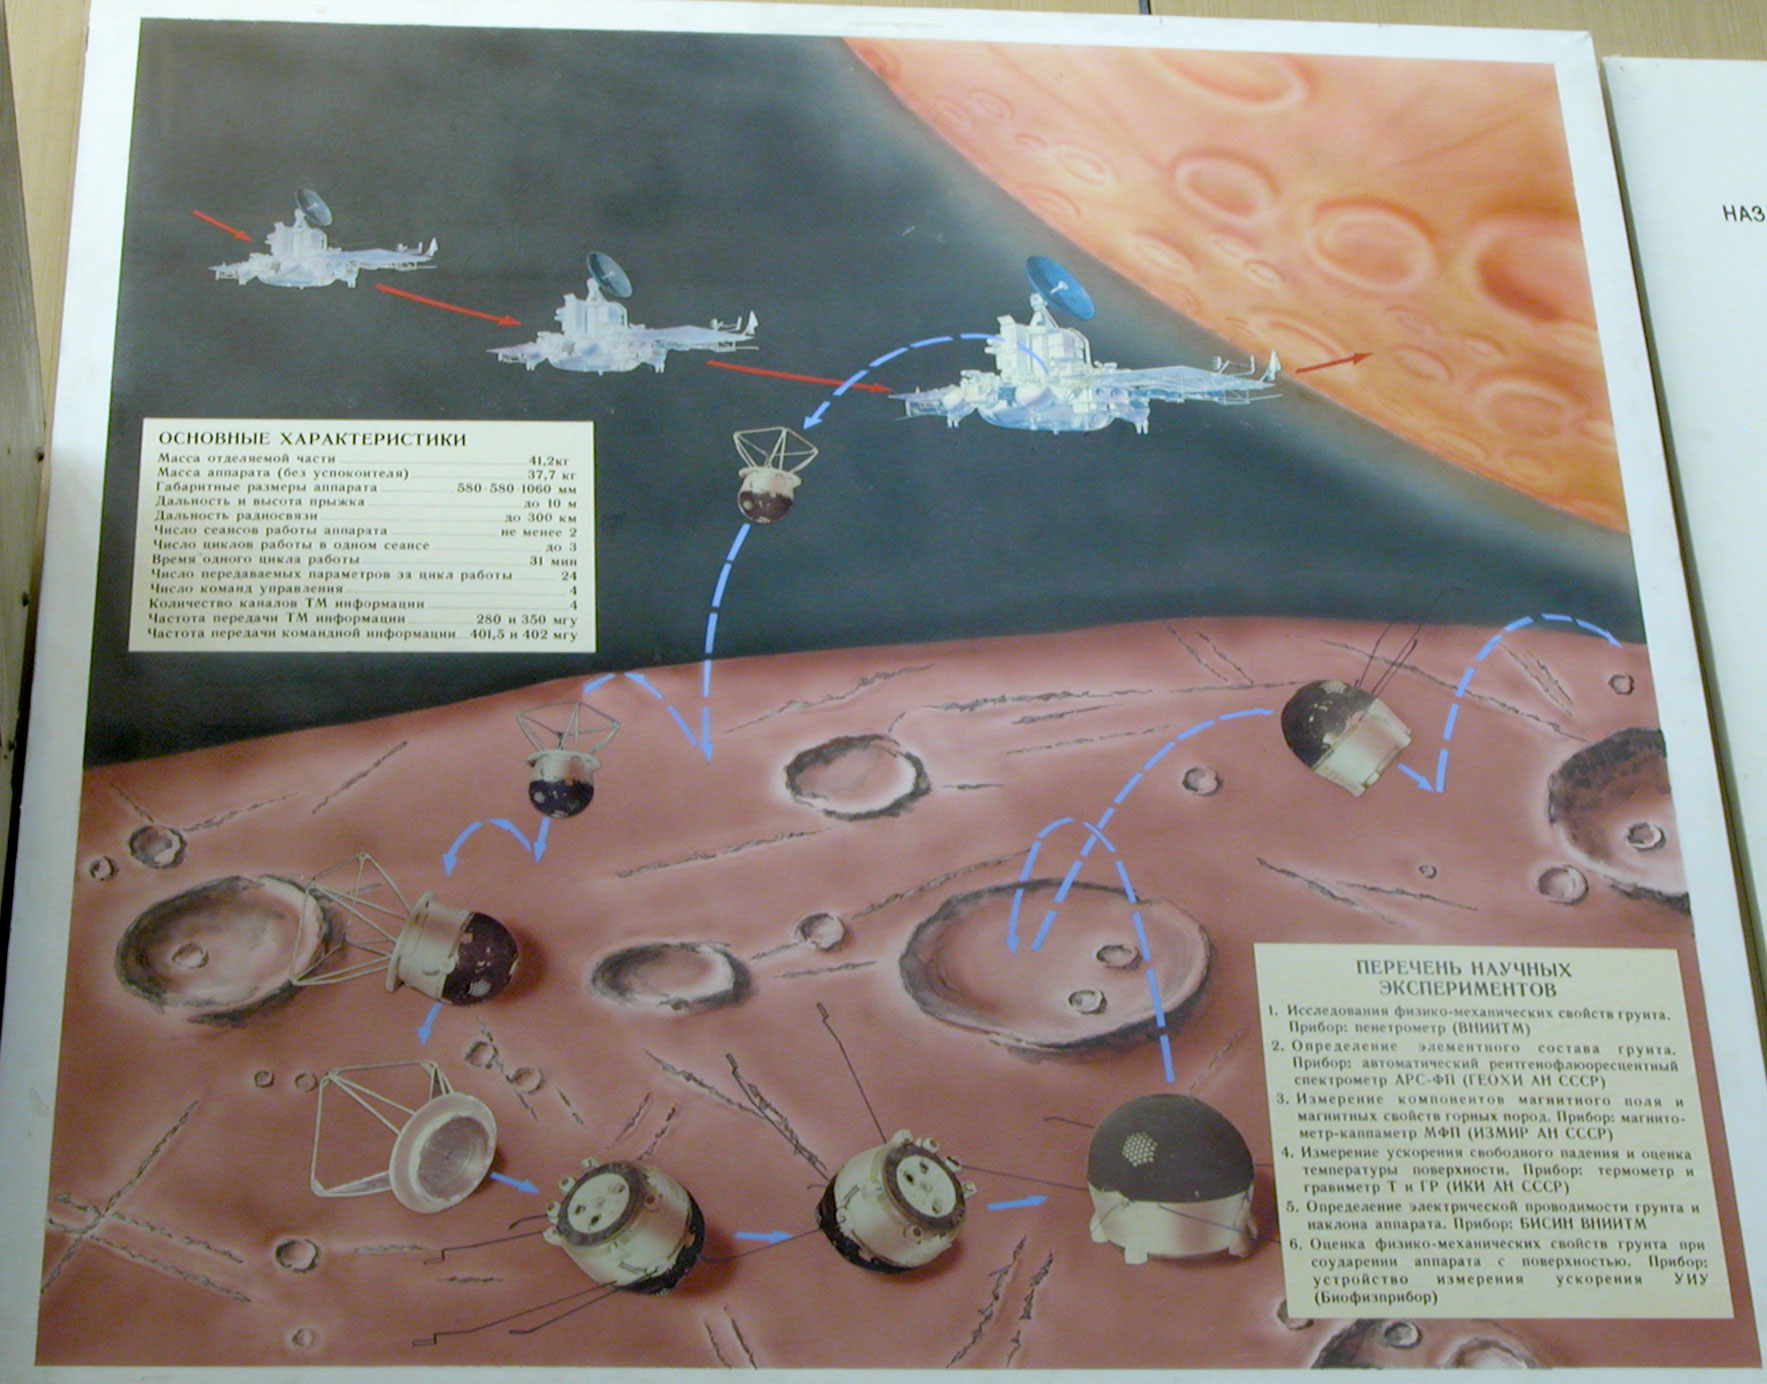 Какой аппарат помогал исследовать поверхность луны. Планетоходы СССР. Марс грунт аппарат. Покорители космоса Планета размером с диск. Программы исследования Фобоса.